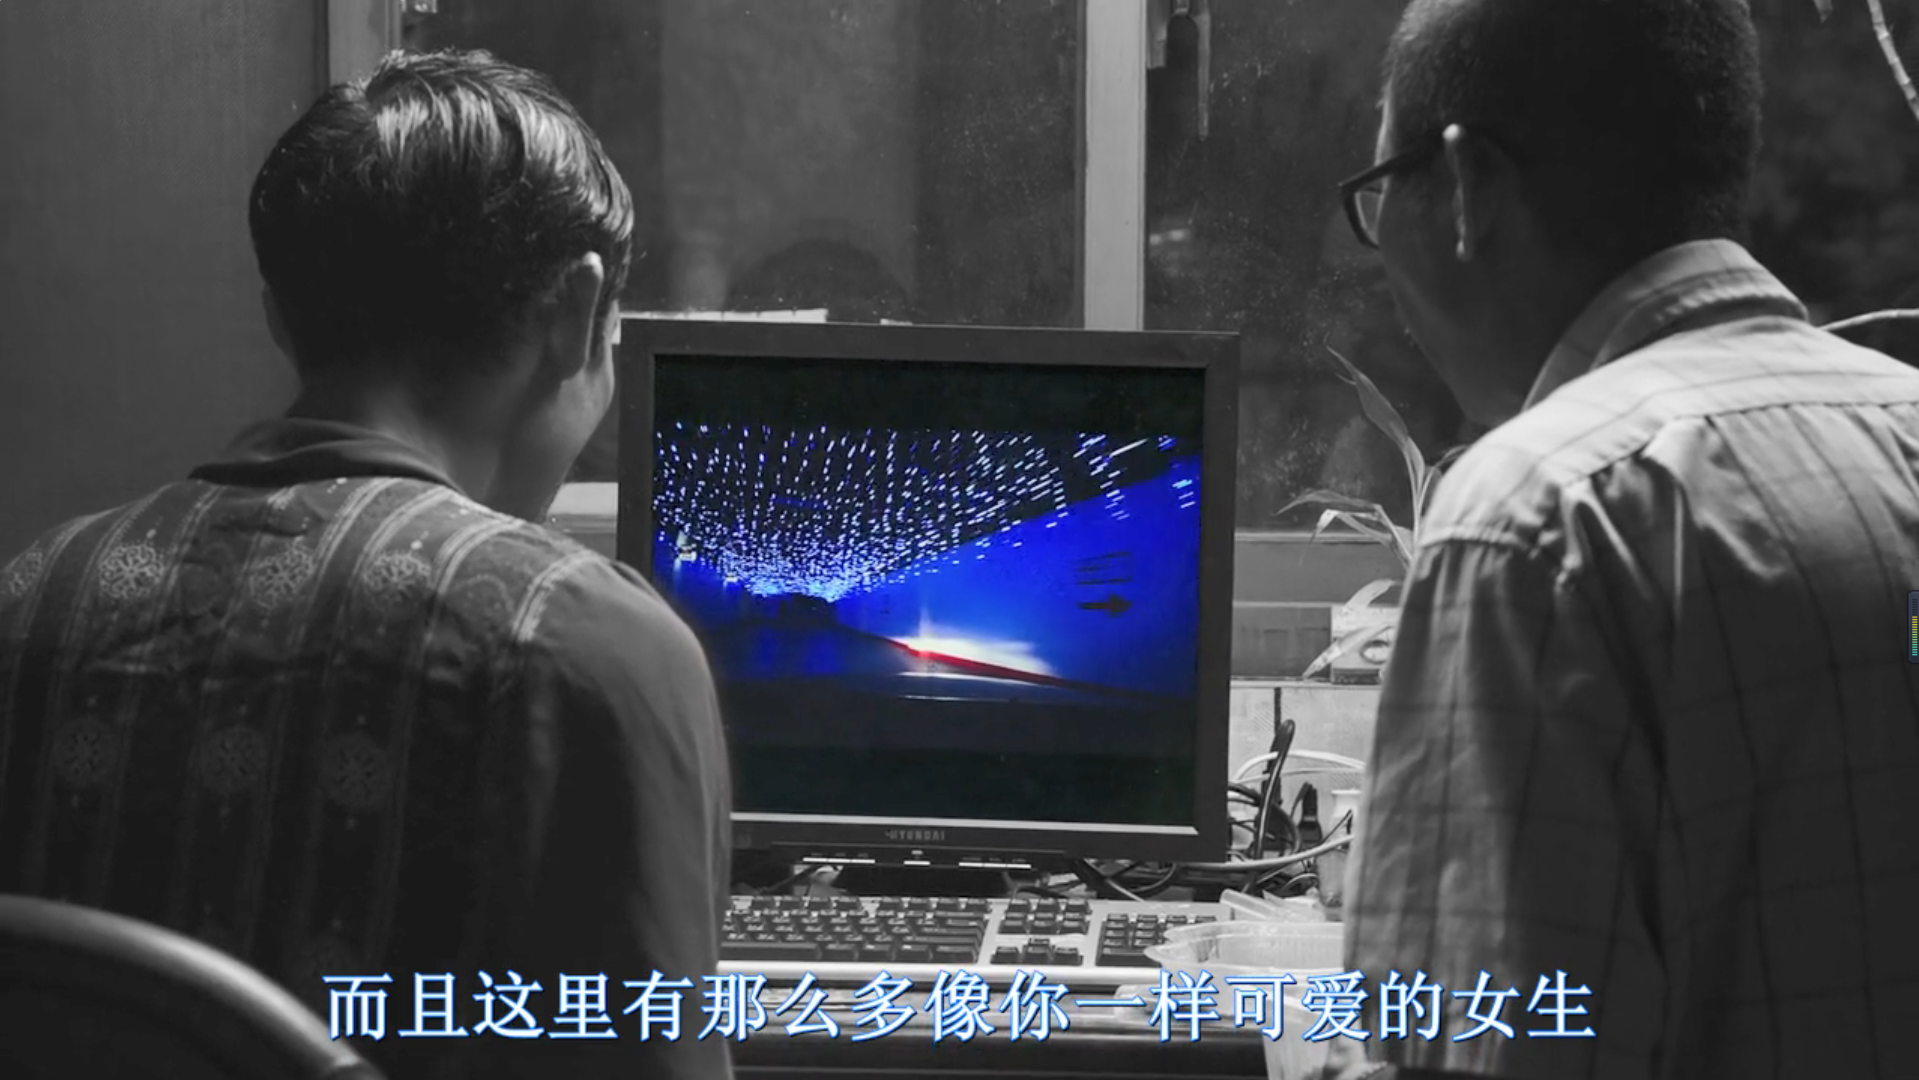 台湾省的电影《大佛普拉斯》带你了解台湾的政治乱象